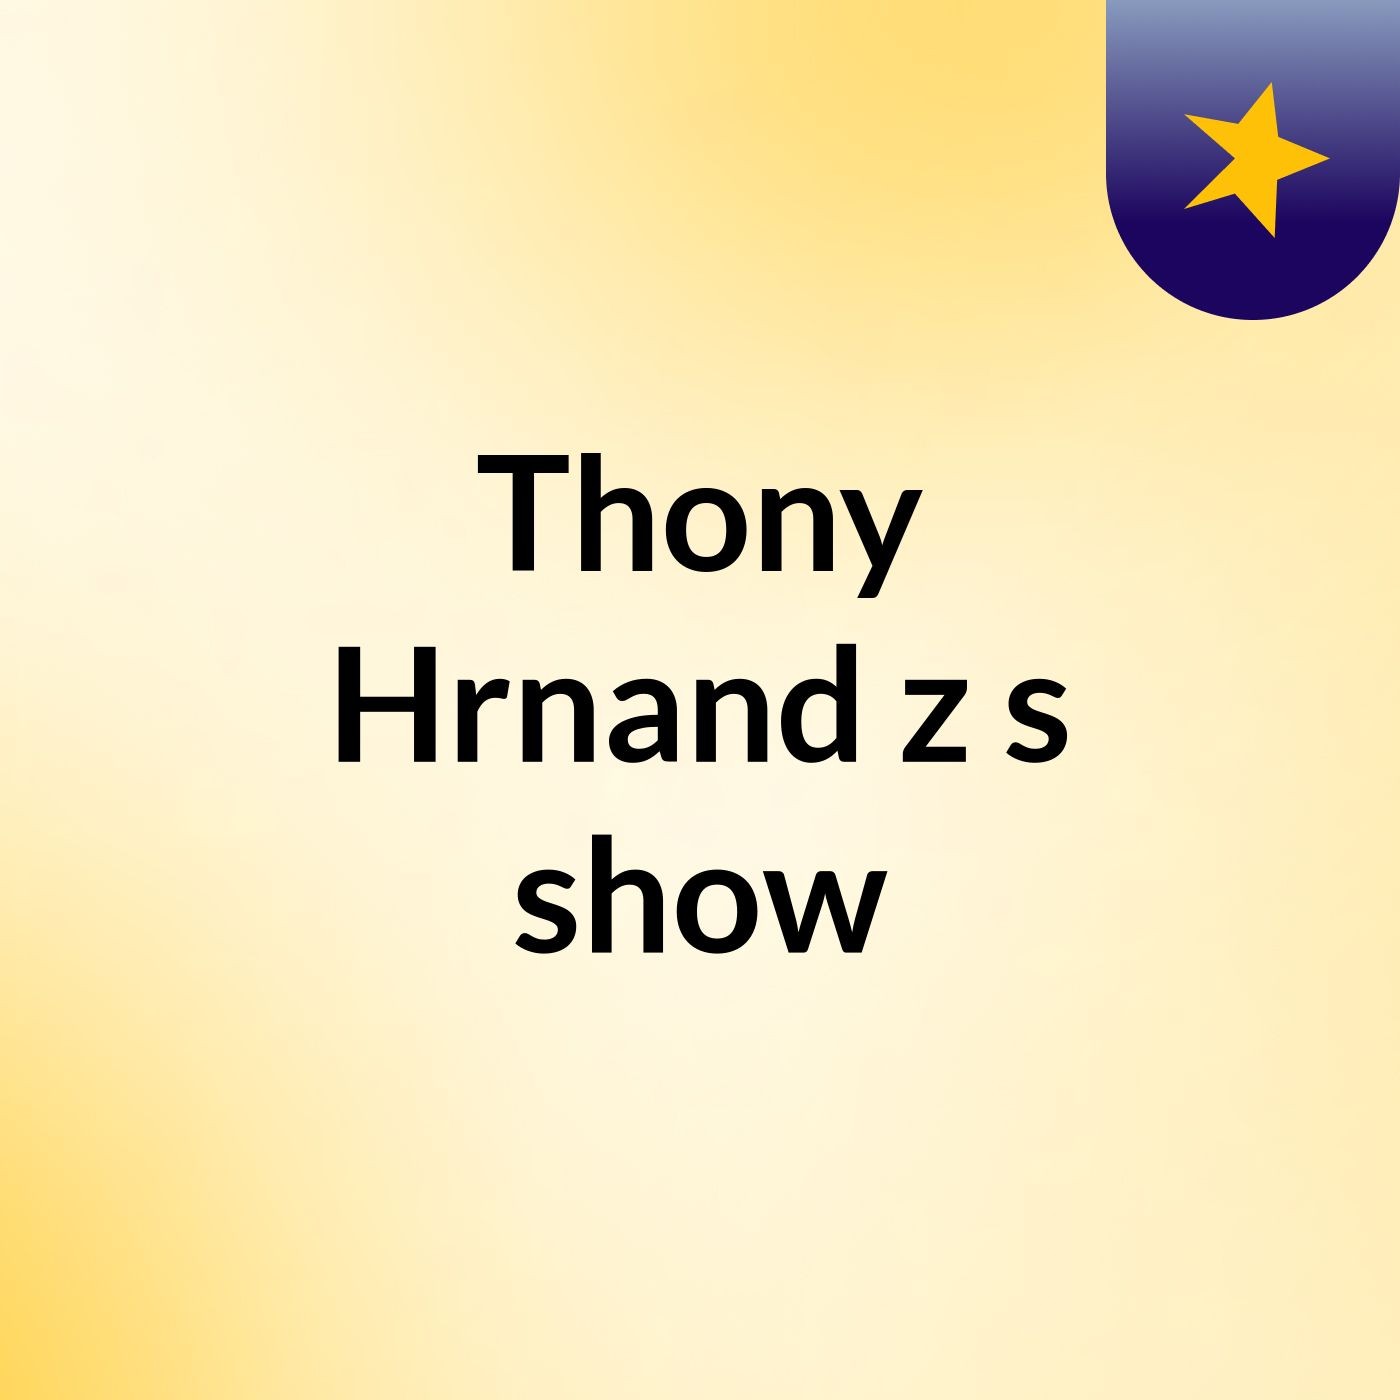 Thony Hrnand'z's show